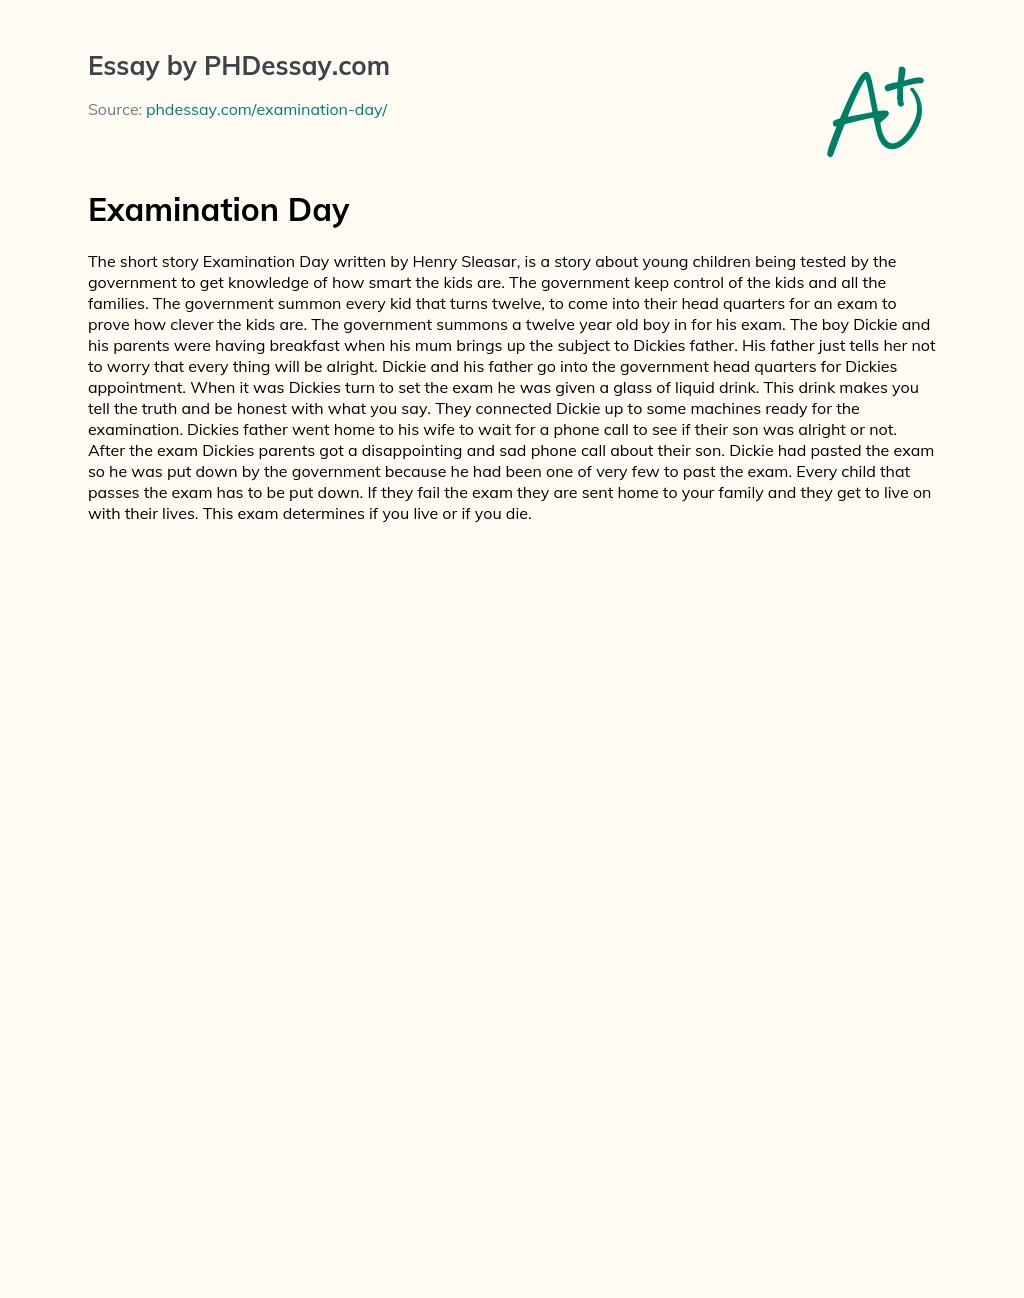 Examination Day essay